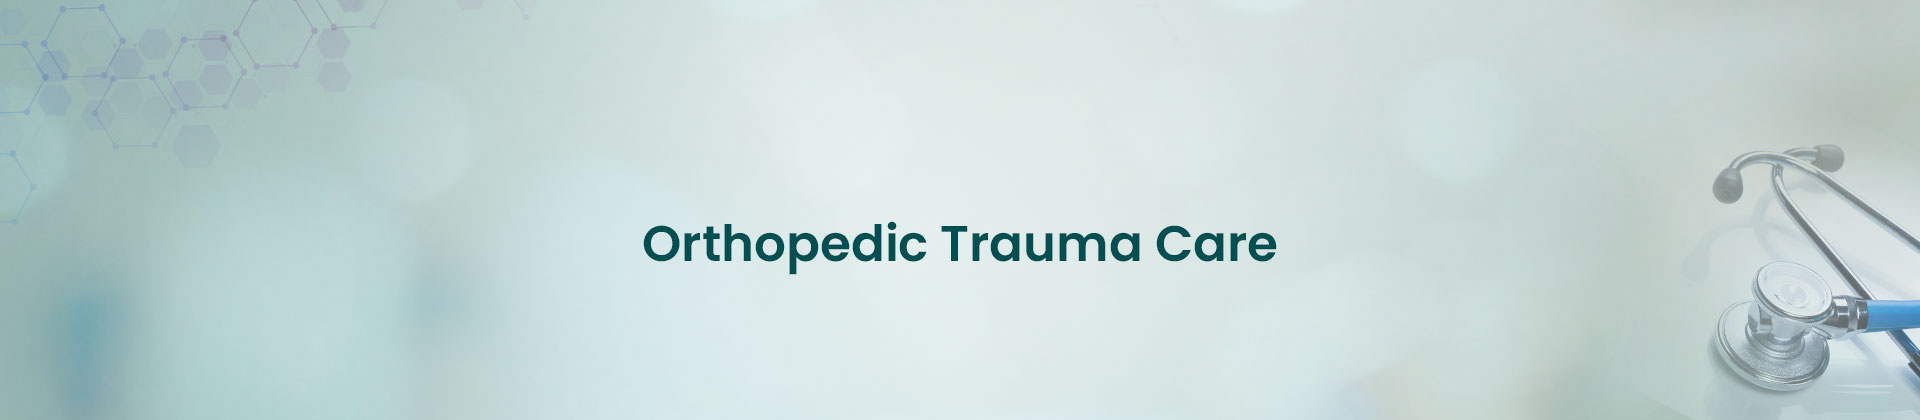 Orthopedic Trauma Care